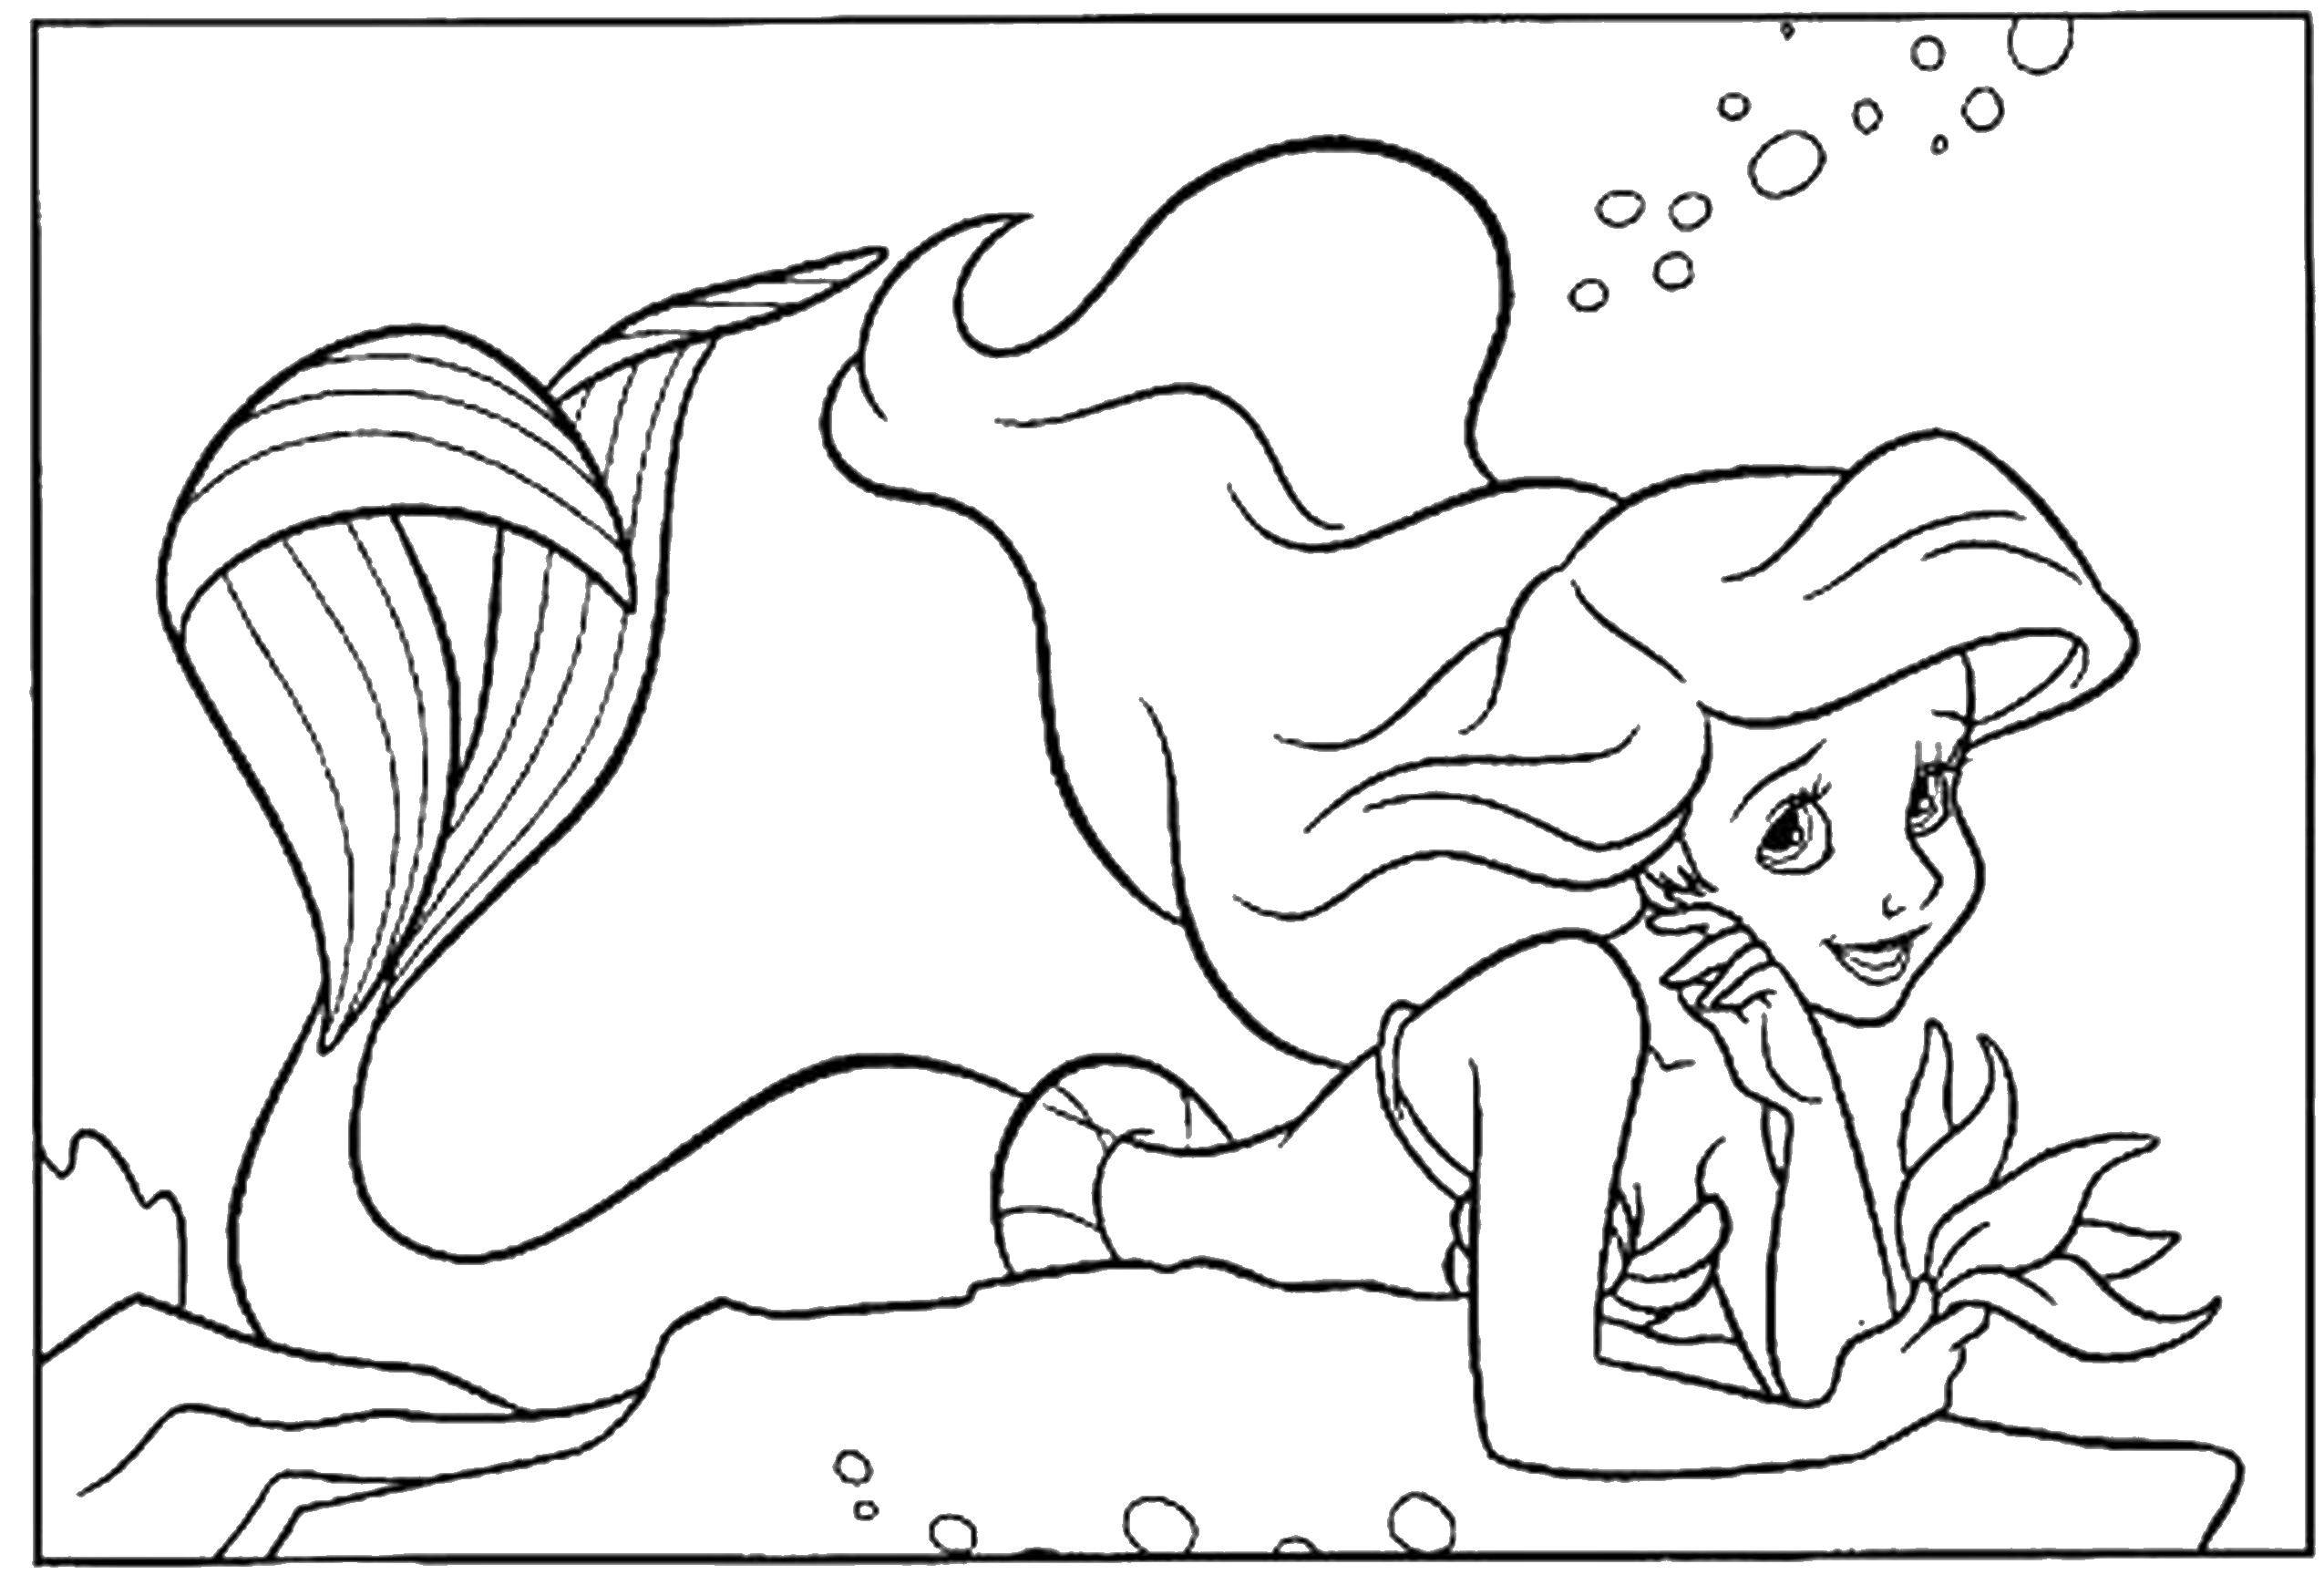 Coloring Mermaid Ariel. Category Disney cartoons. Tags:  Mermaid, Ariel.